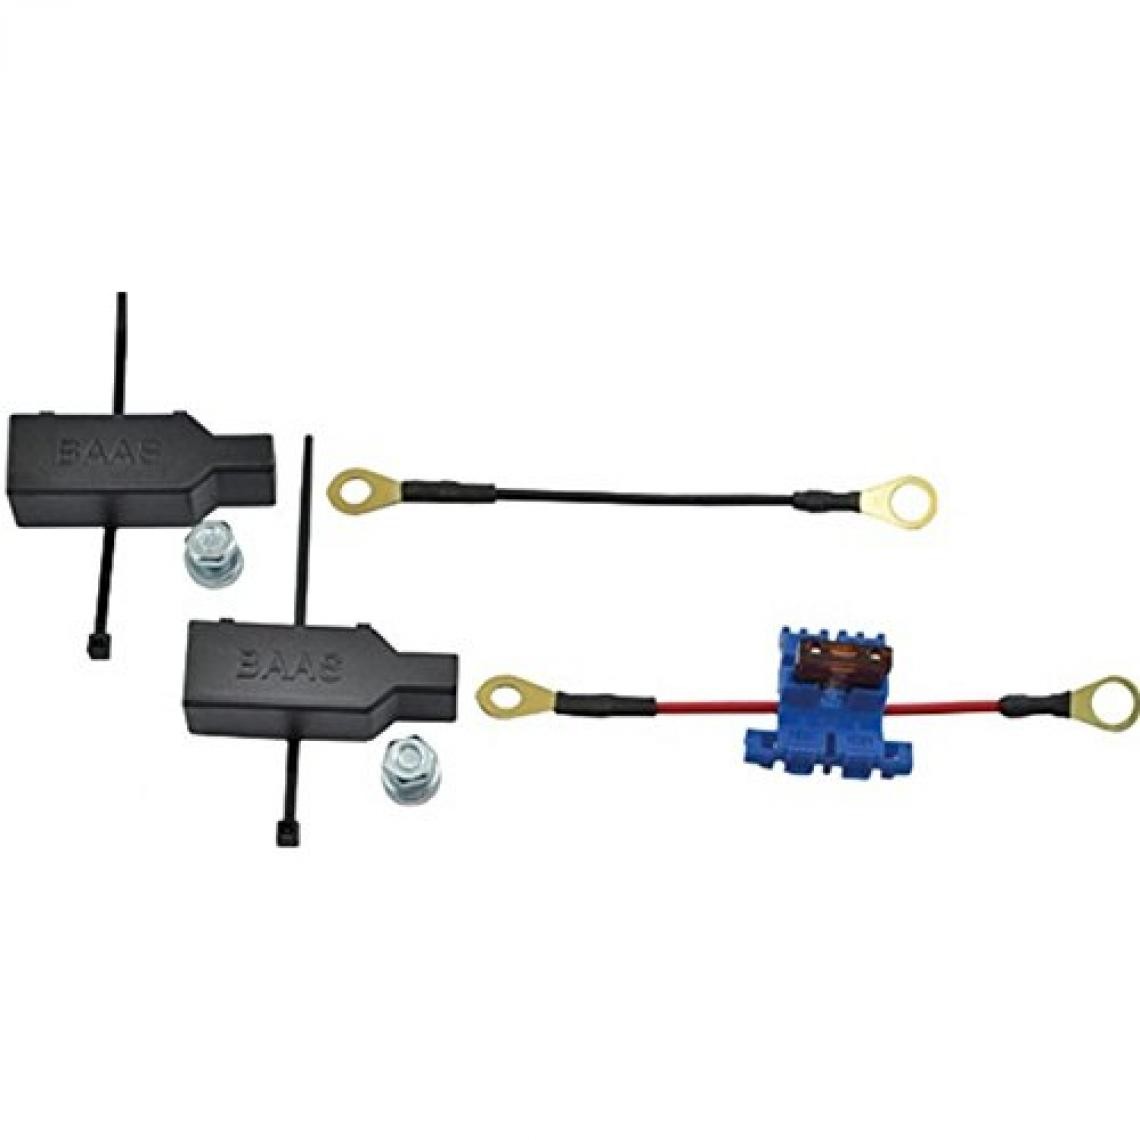 Inconnu - BAAS Es03 Ensemble de connecteur de câble - Fils et câbles électriques